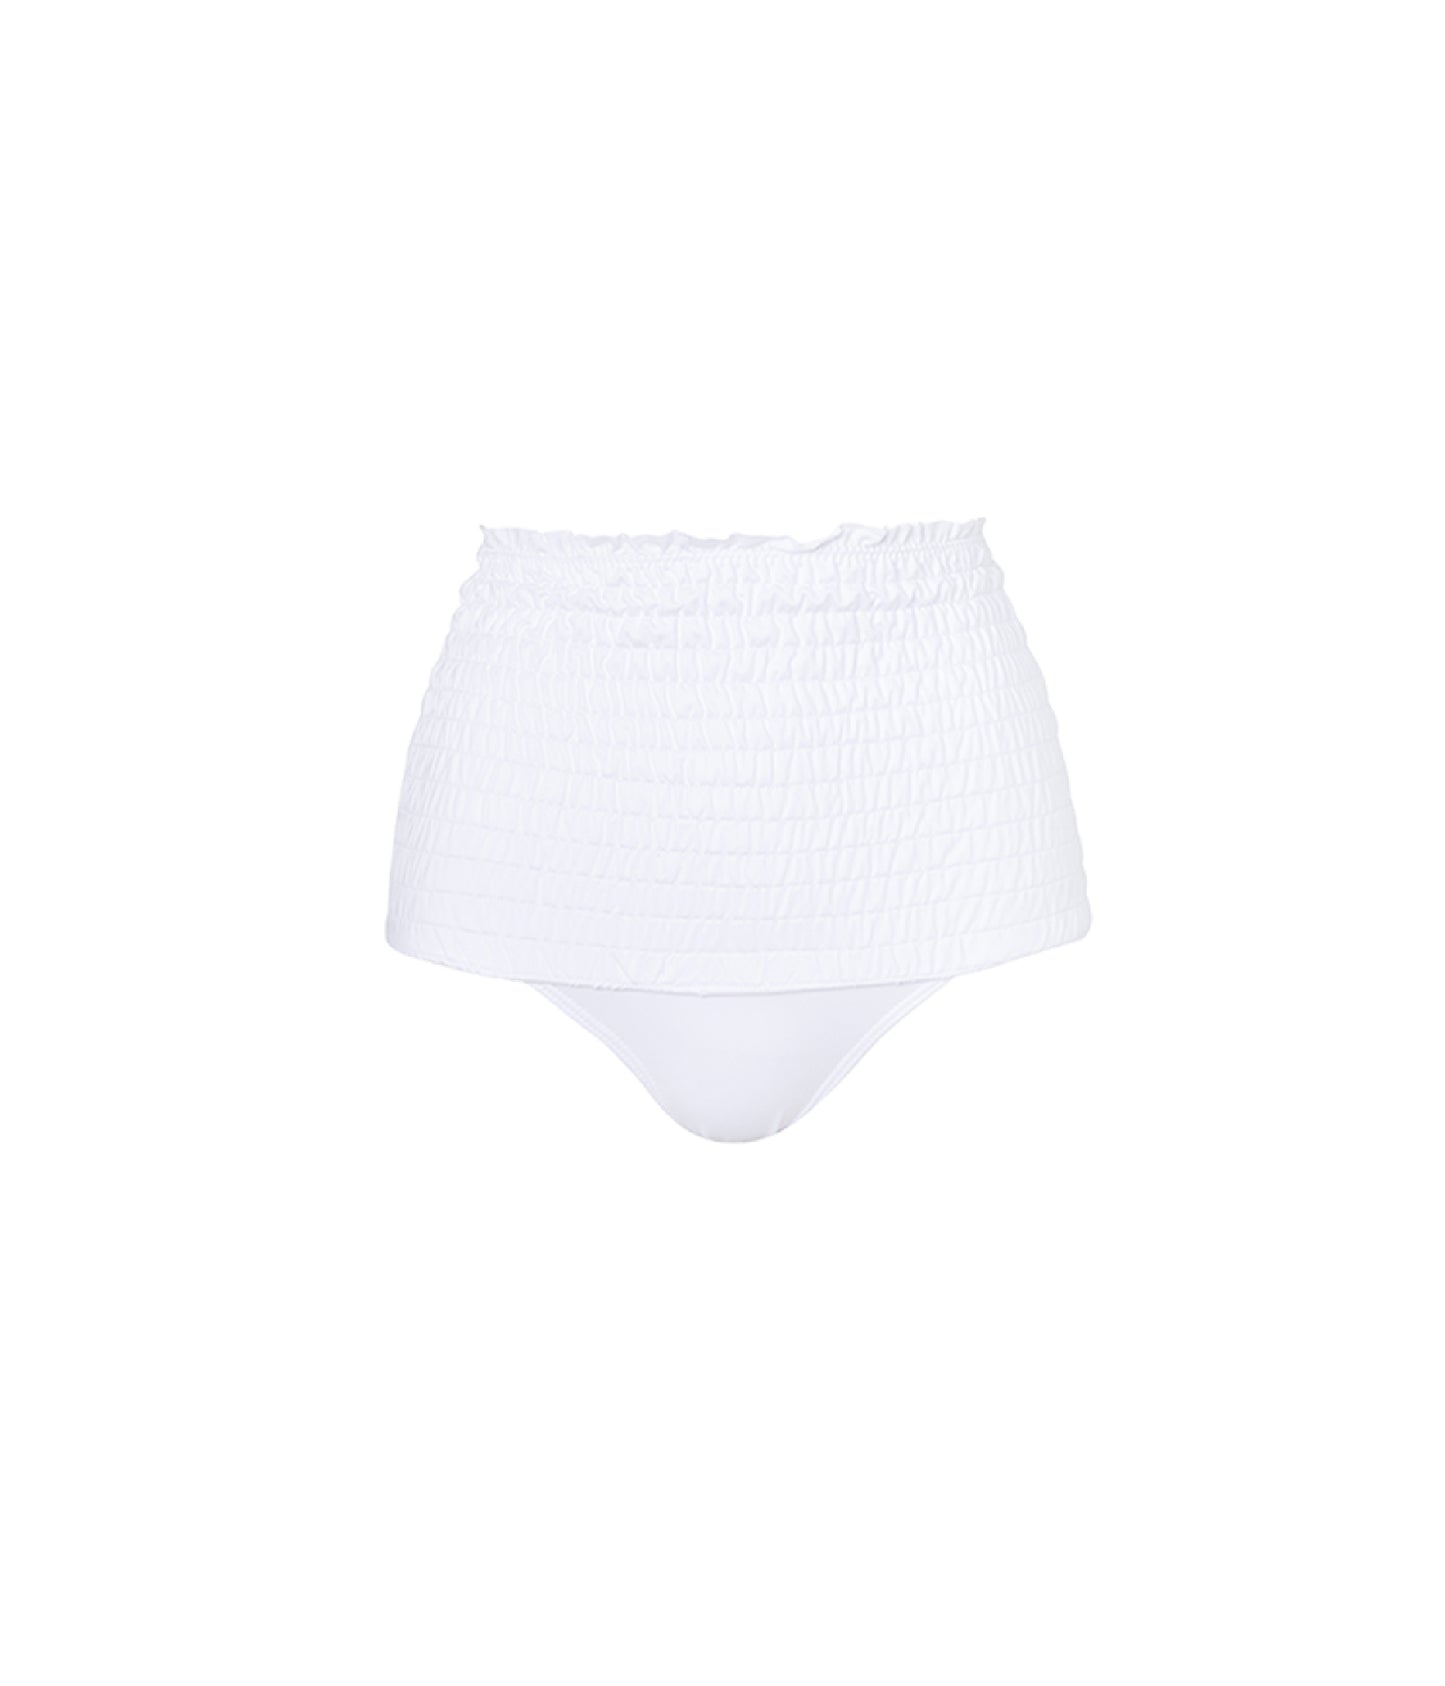 Verdelimon - Bikini Bottom - Nilo - Printed - White - Front